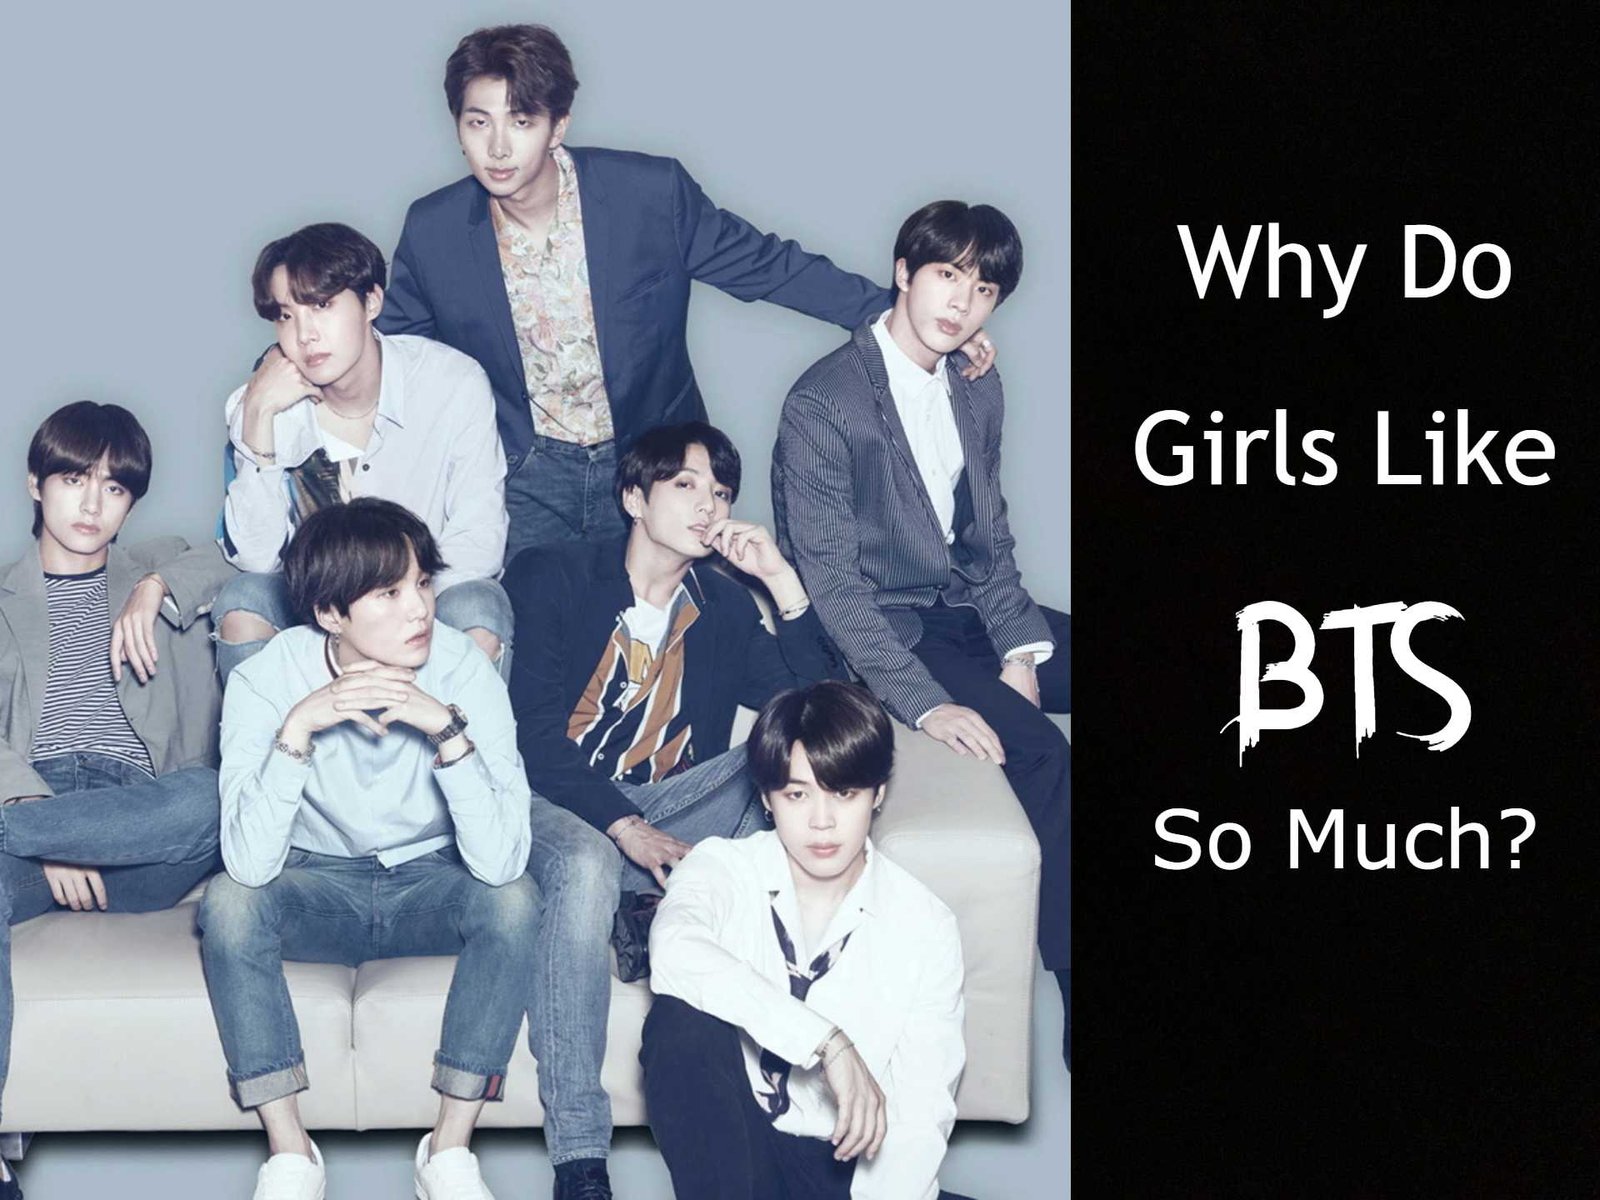 Why Do Girls Like BTS